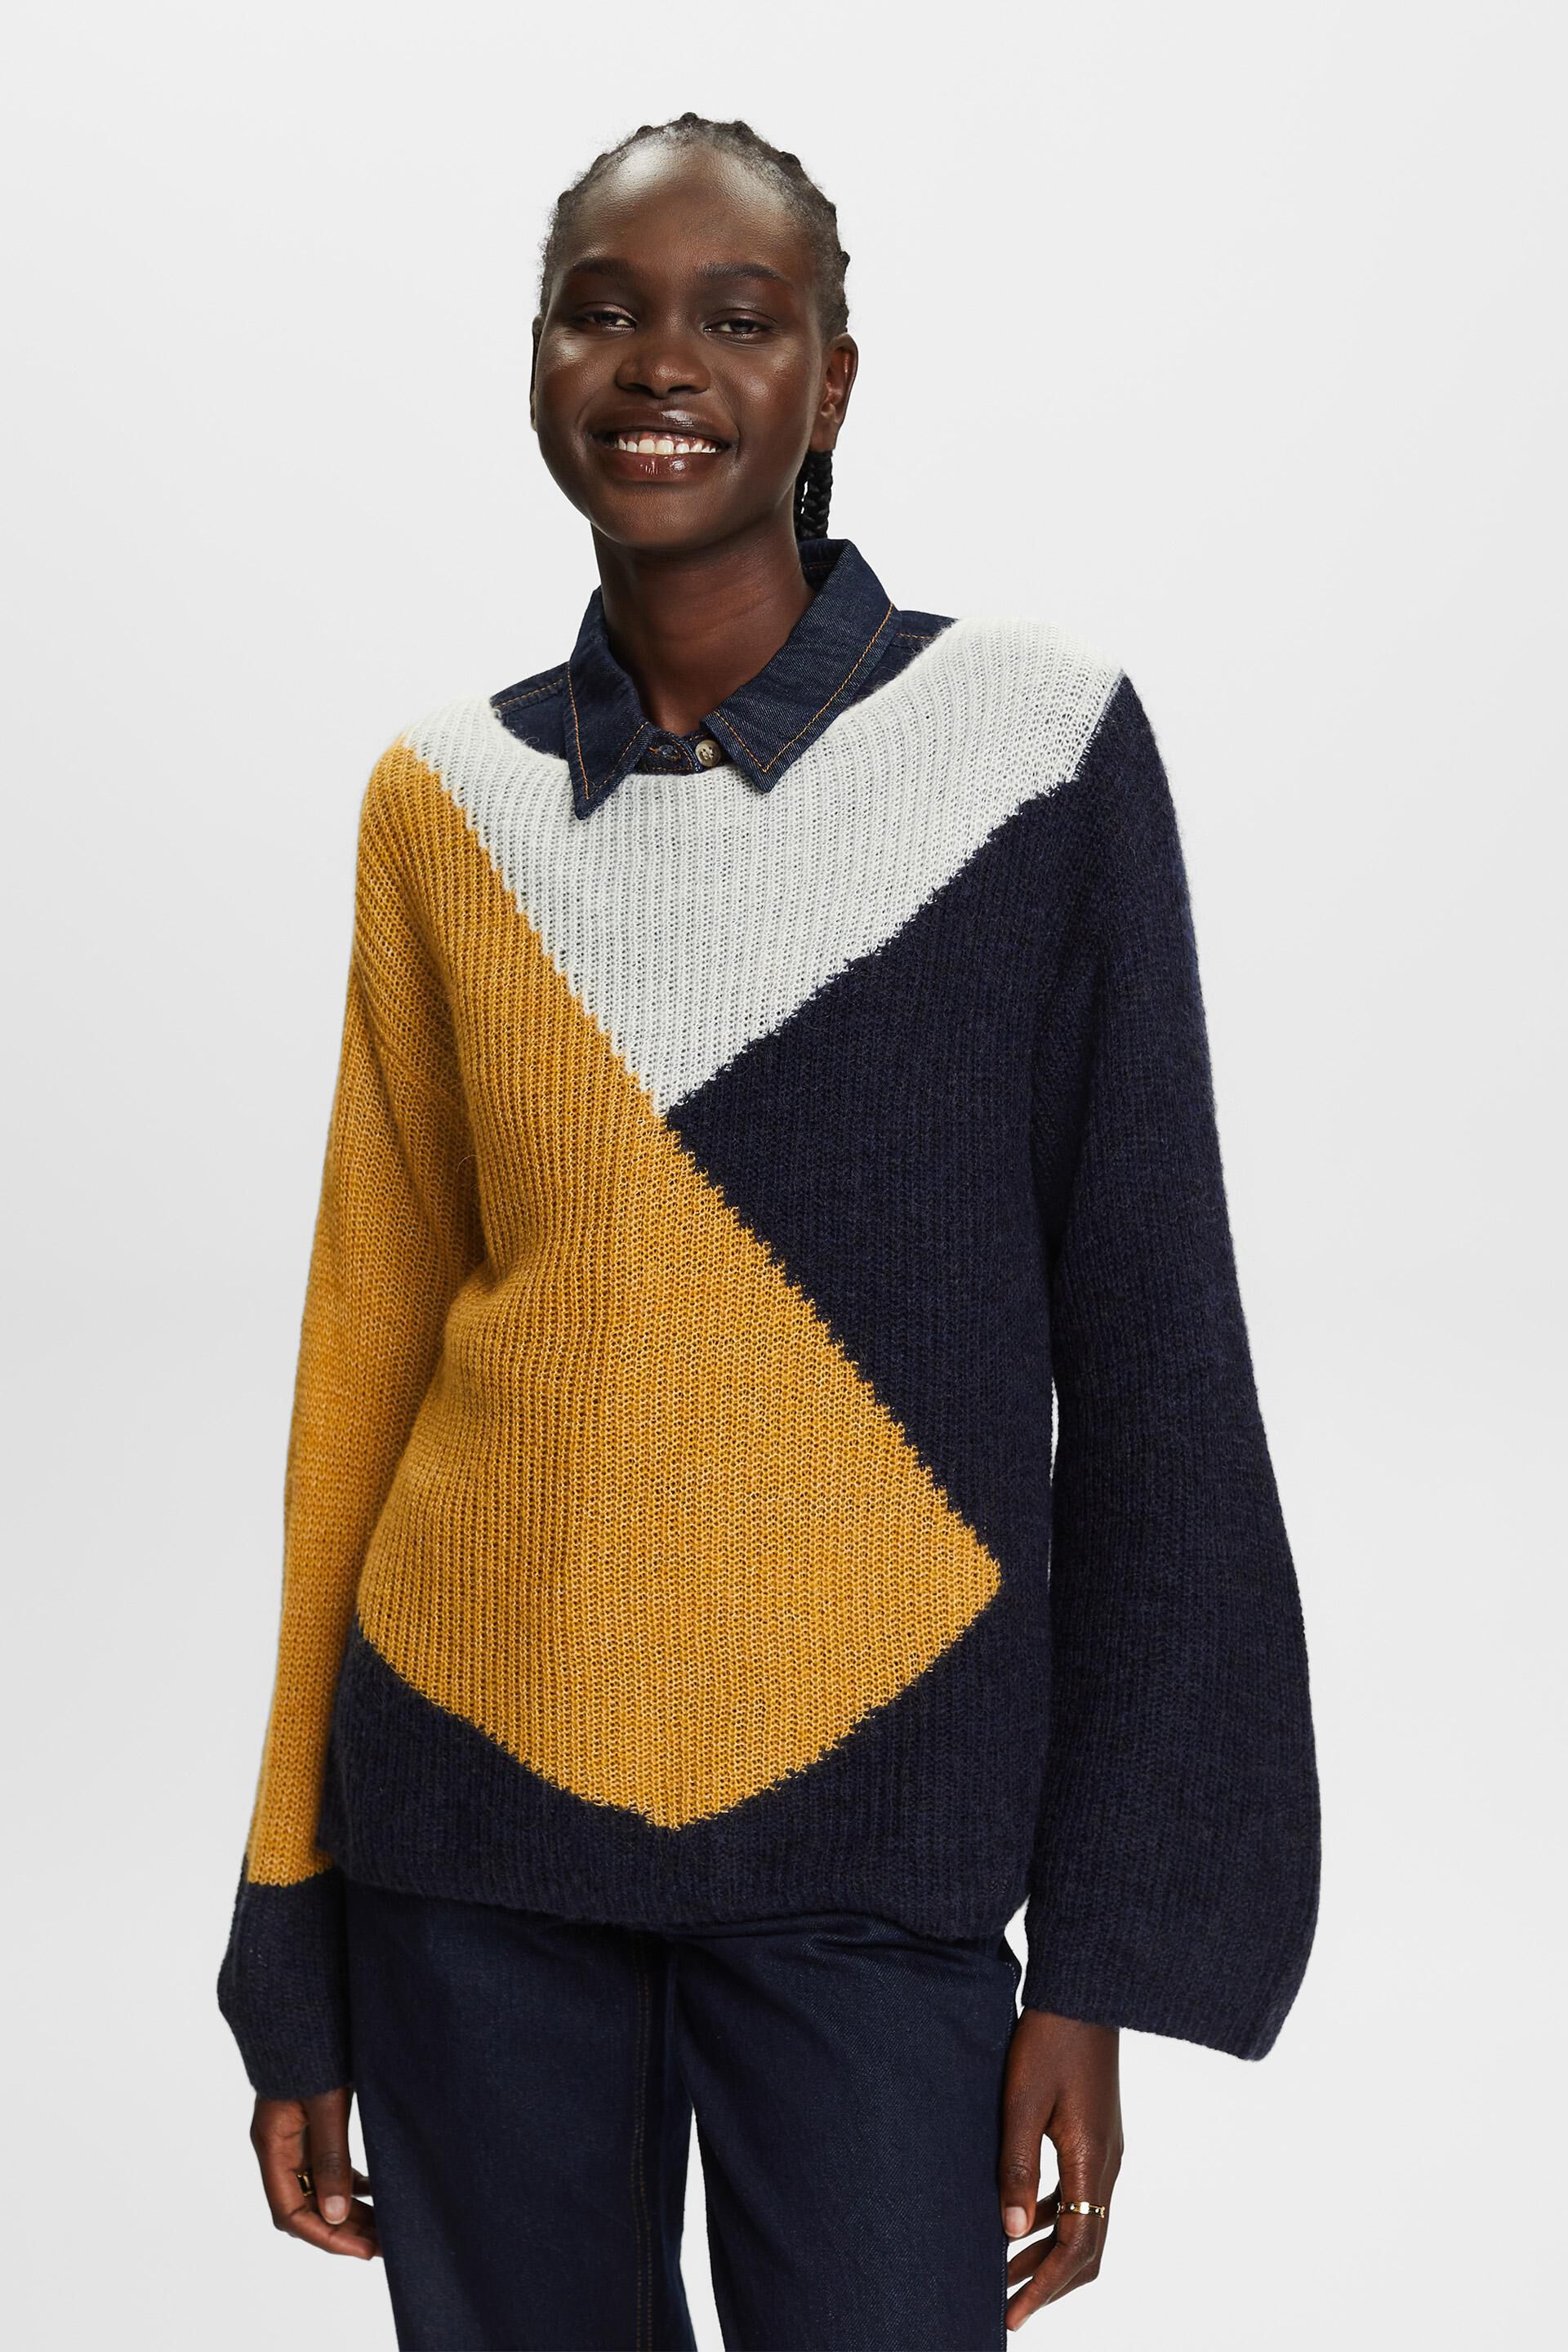 Esprit blend Colourblock jumper, wool